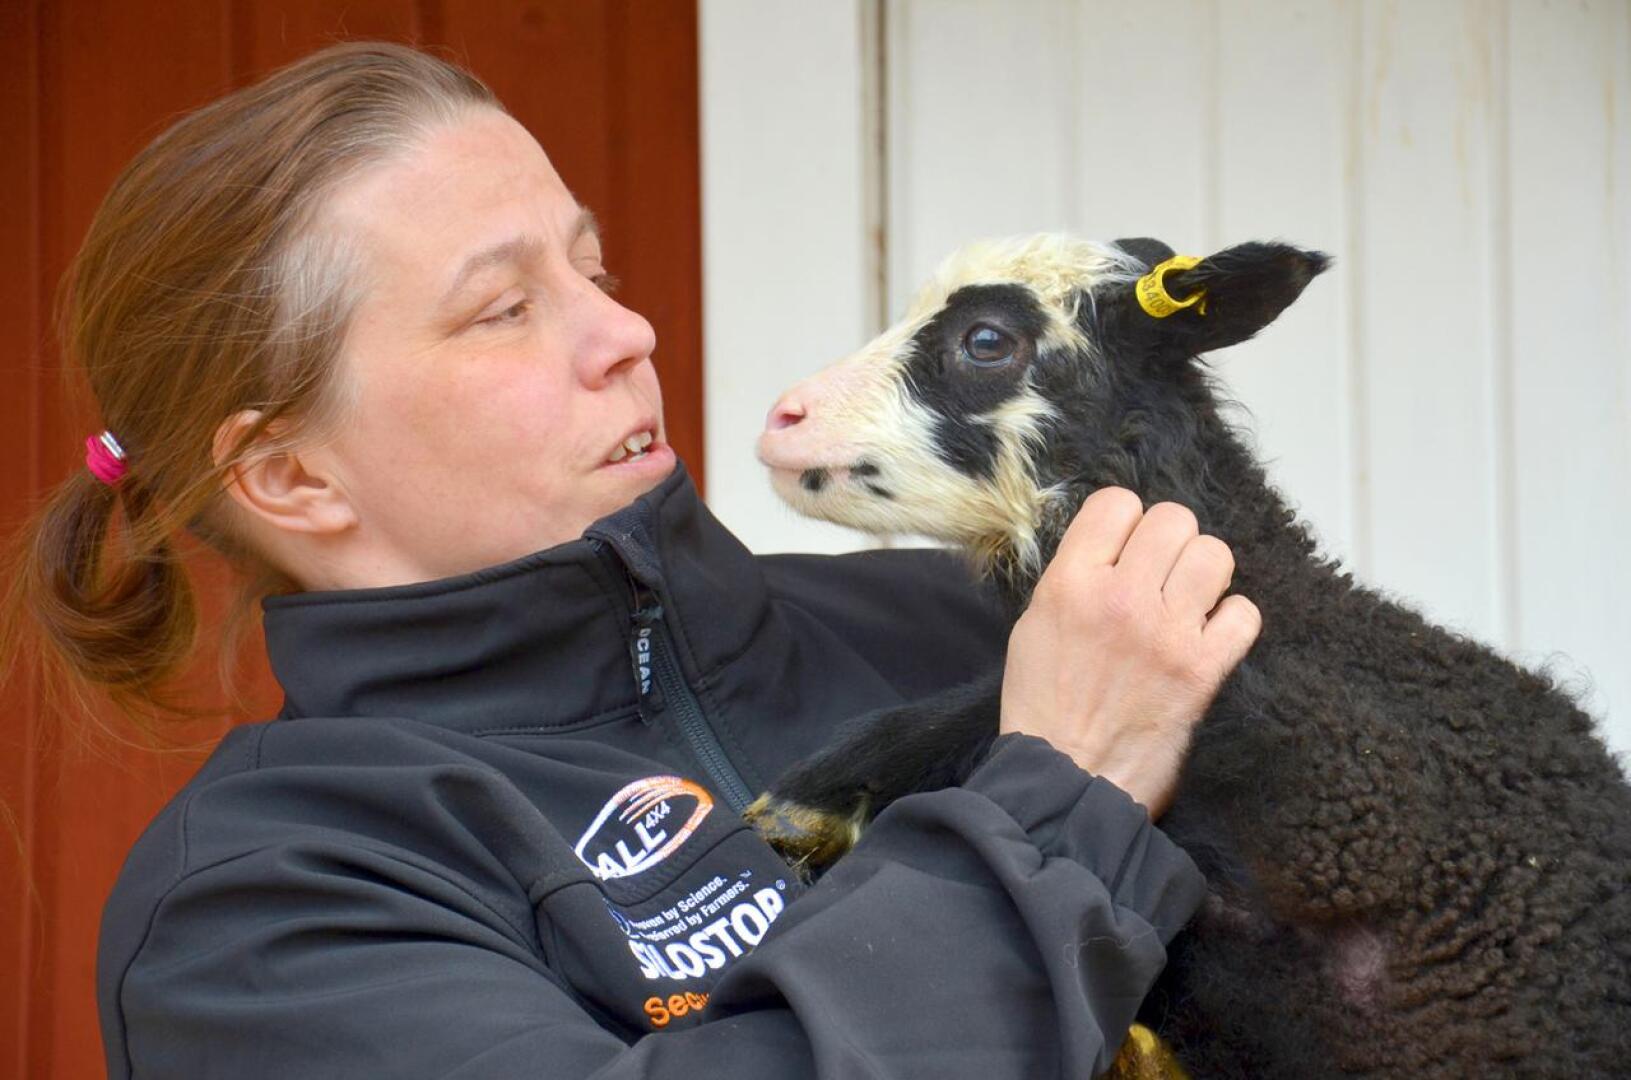 Satu Kumpulainen Isokummun lammastilalta kertoo tilaisuudessa omista kokemuksistaan Green care -palvelujen tuottajana.